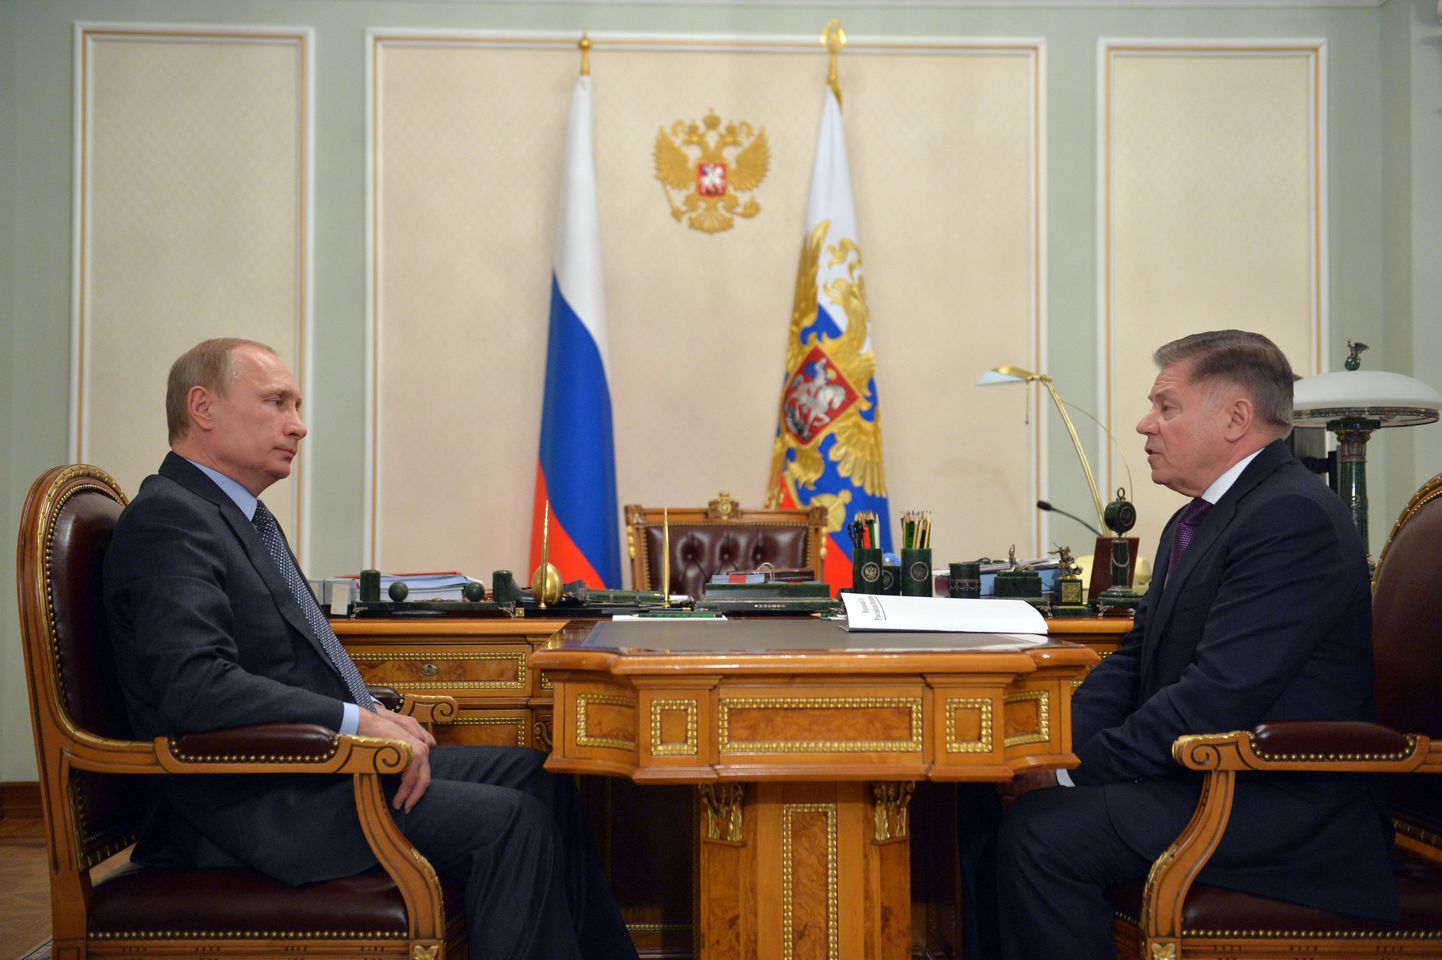 Vladimir Putini kohtumas Karjala liidri Aleksandr Hudilaineniga. Kui Kremli teatel toimus kohtumine 11. märtsil, siis mitmete allikate väitel kohtusid mehed juba möödunud nädalalal.